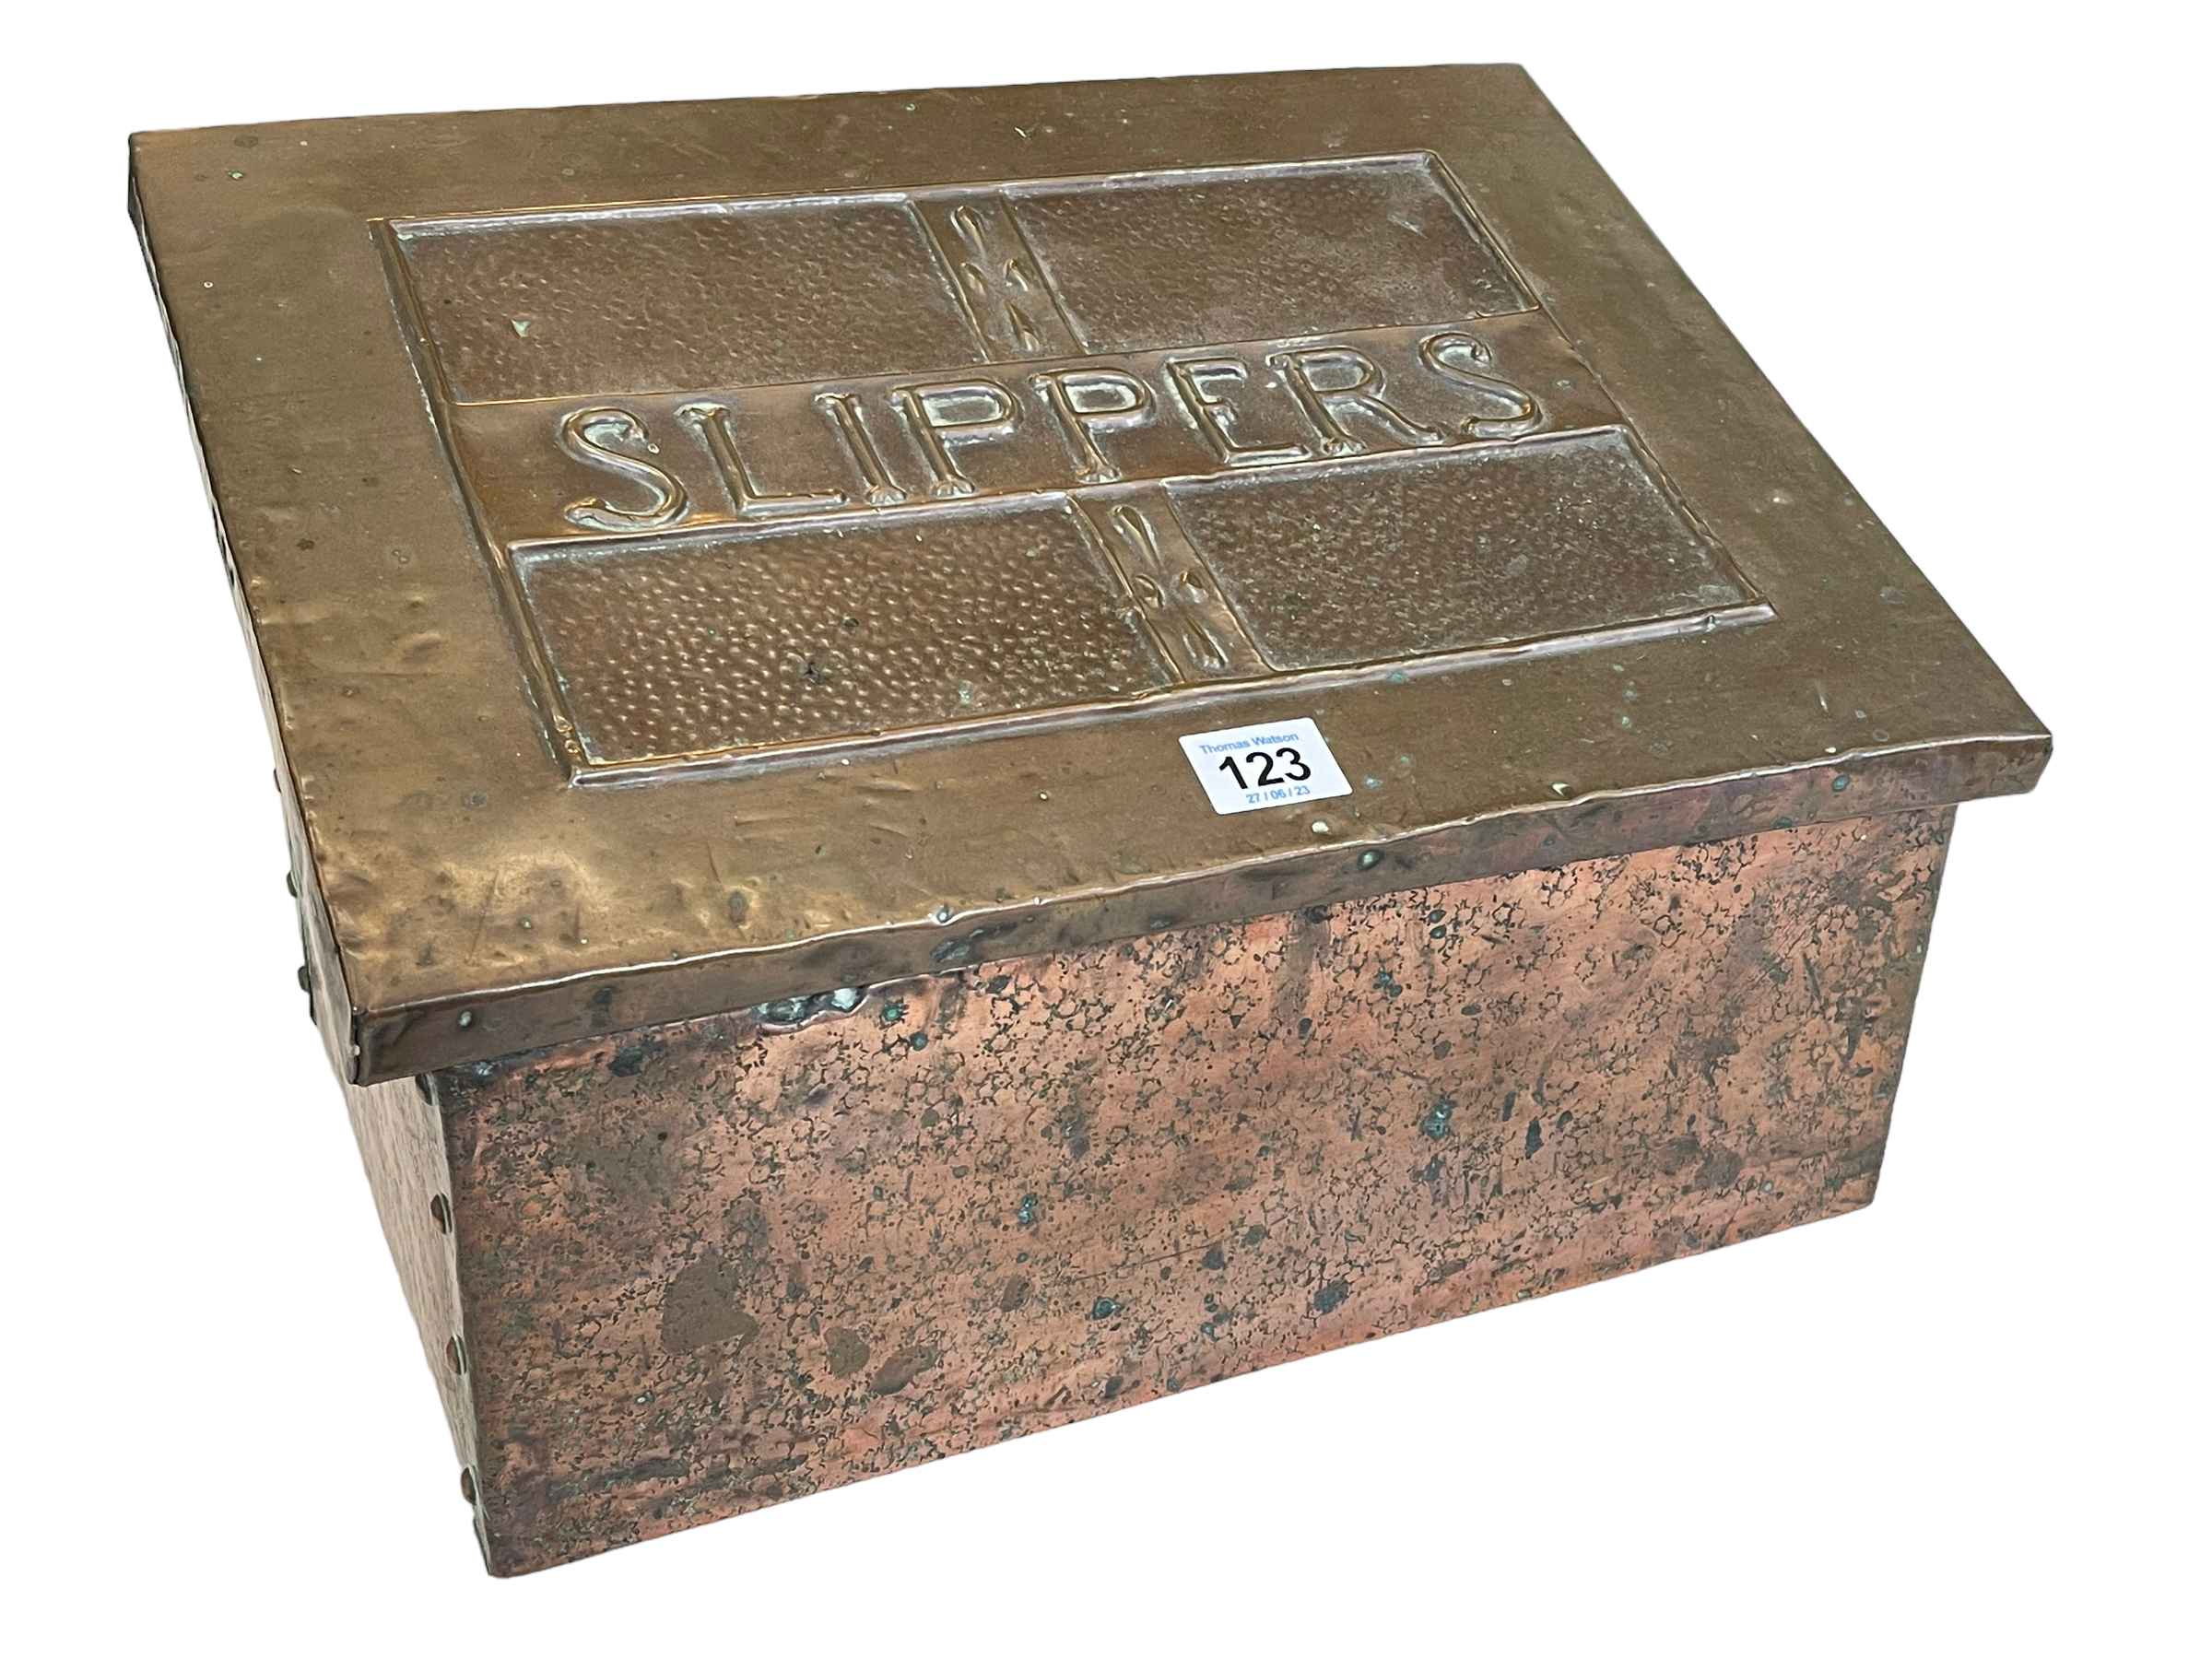 Victorian copper slipper box, 23cm high.